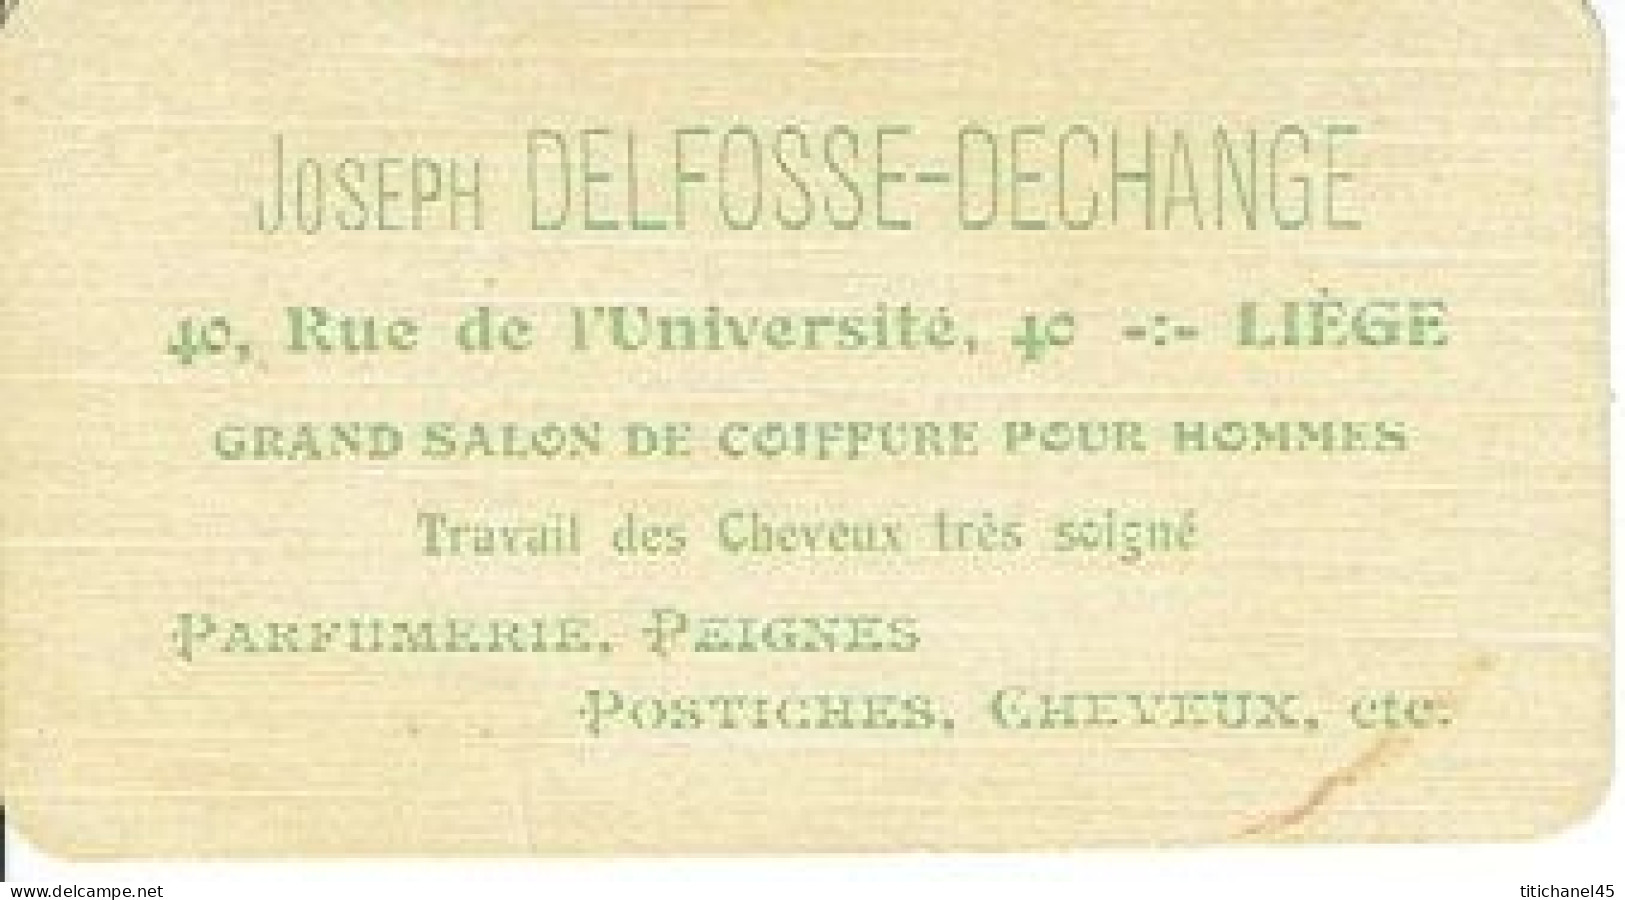 Carte Parfum POMPEÎA De L.T. PIVER - Carte Offerte Par Joseph DELFOSSE à LIEGE - Vintage (until 1960)